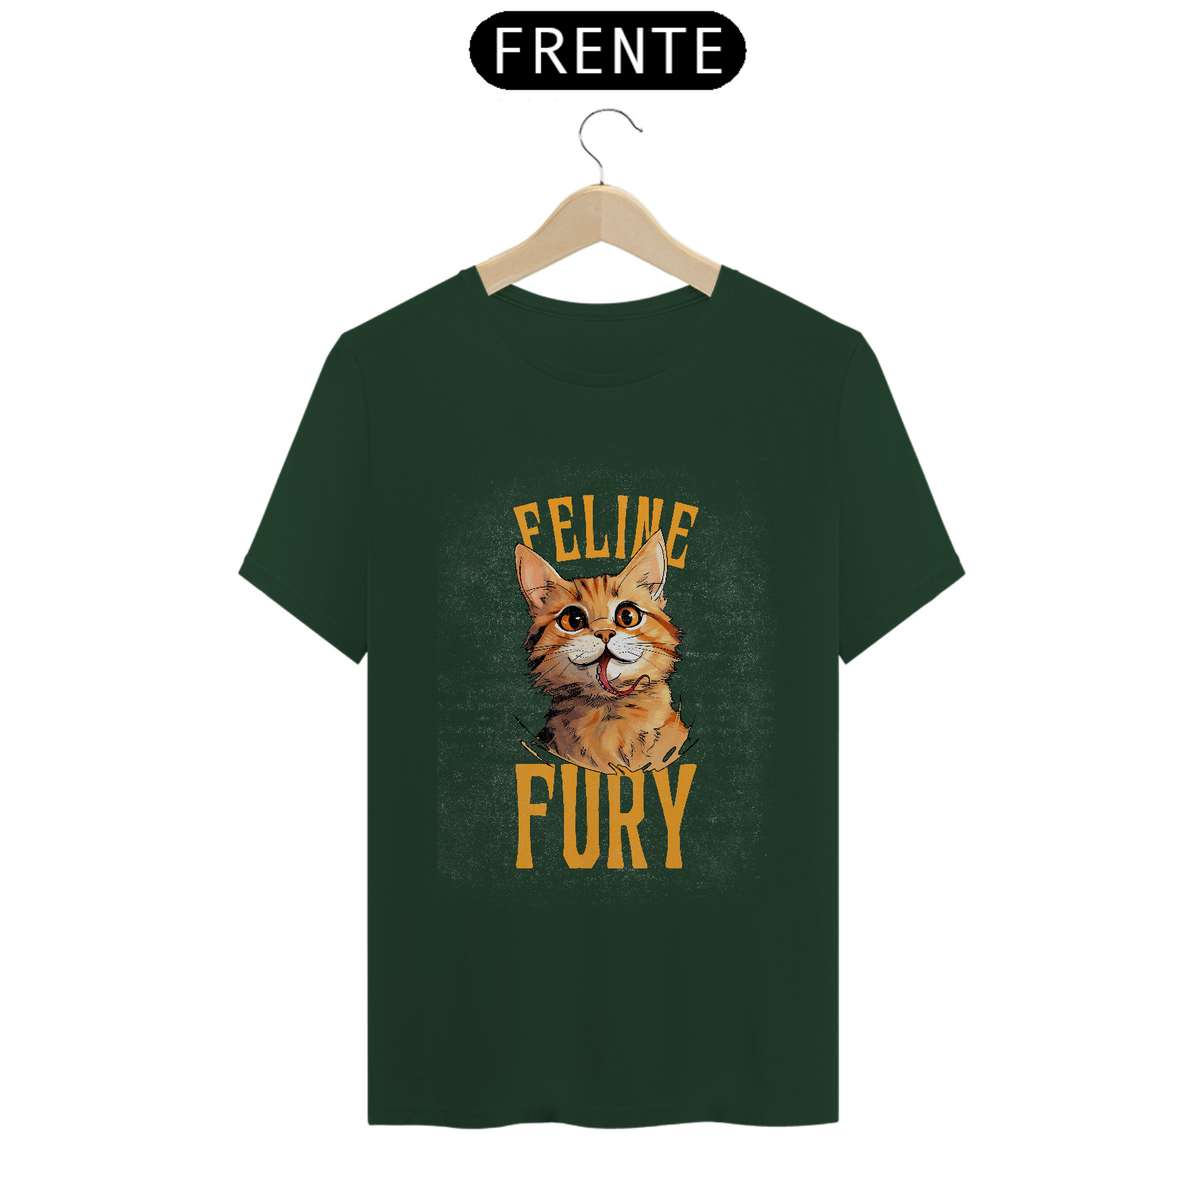 Nome do produto: Feline Fury